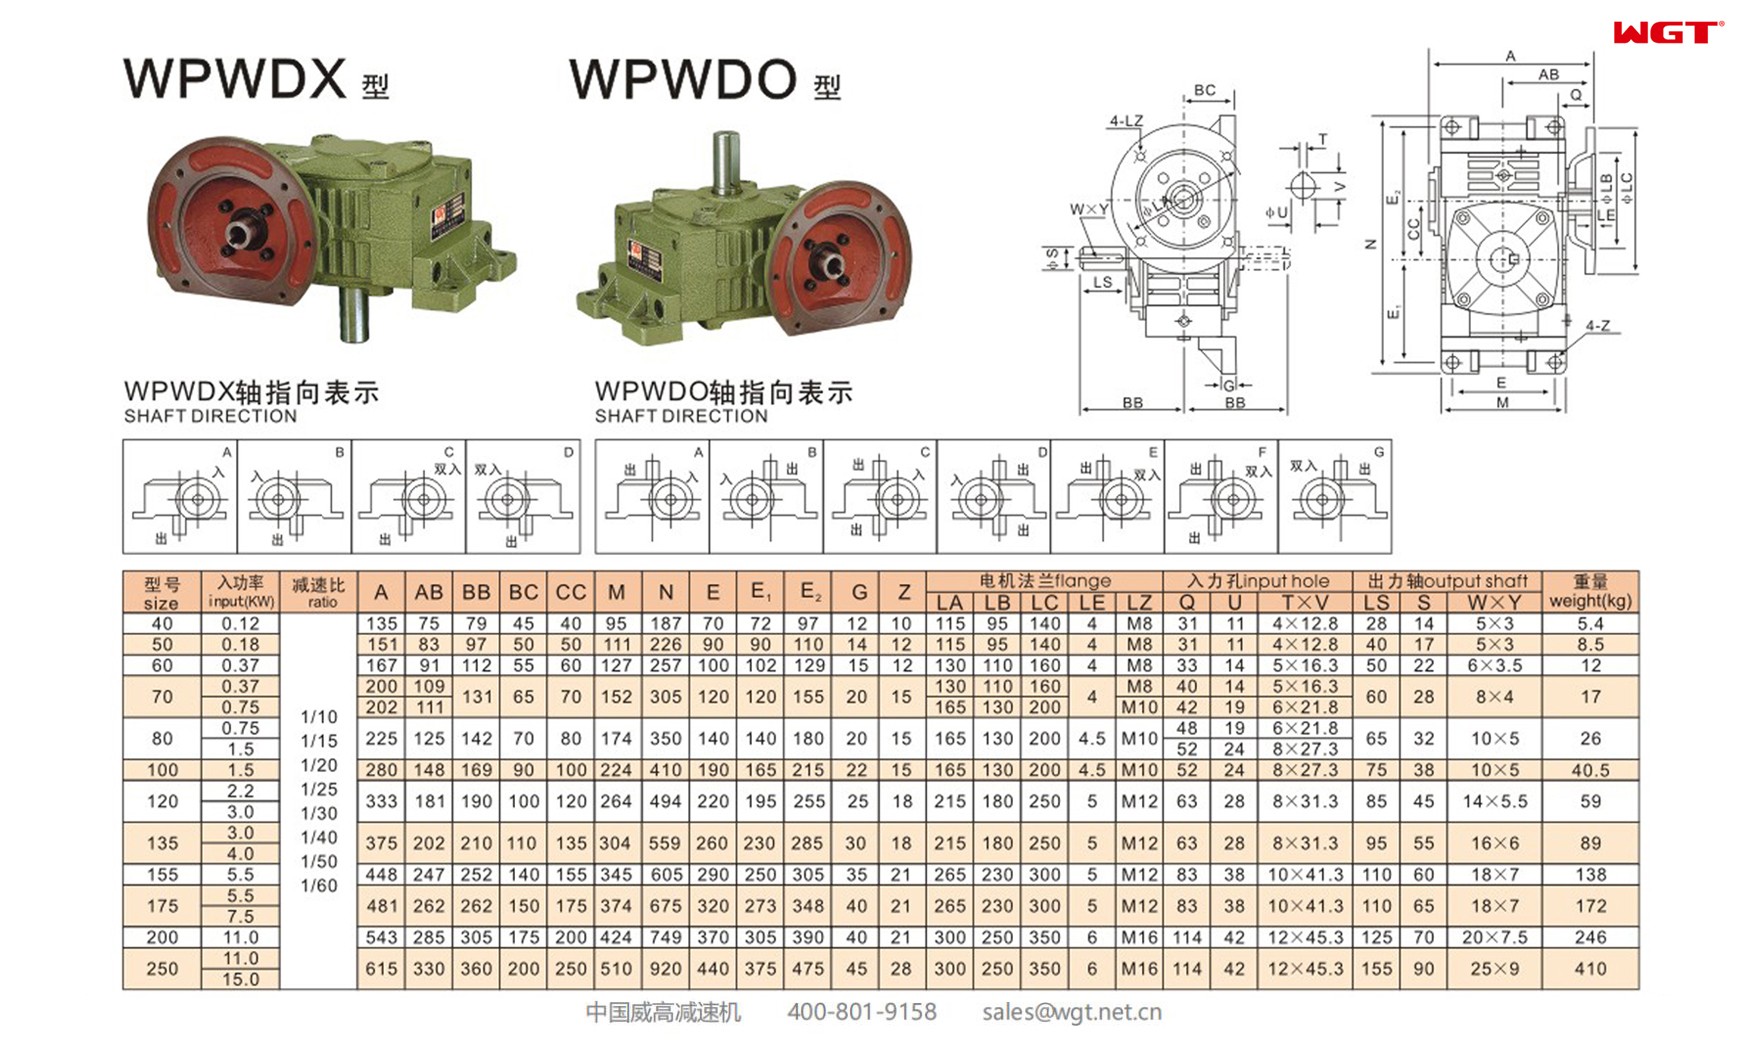 WPWDX155 worm gear reducer universal speed reducer